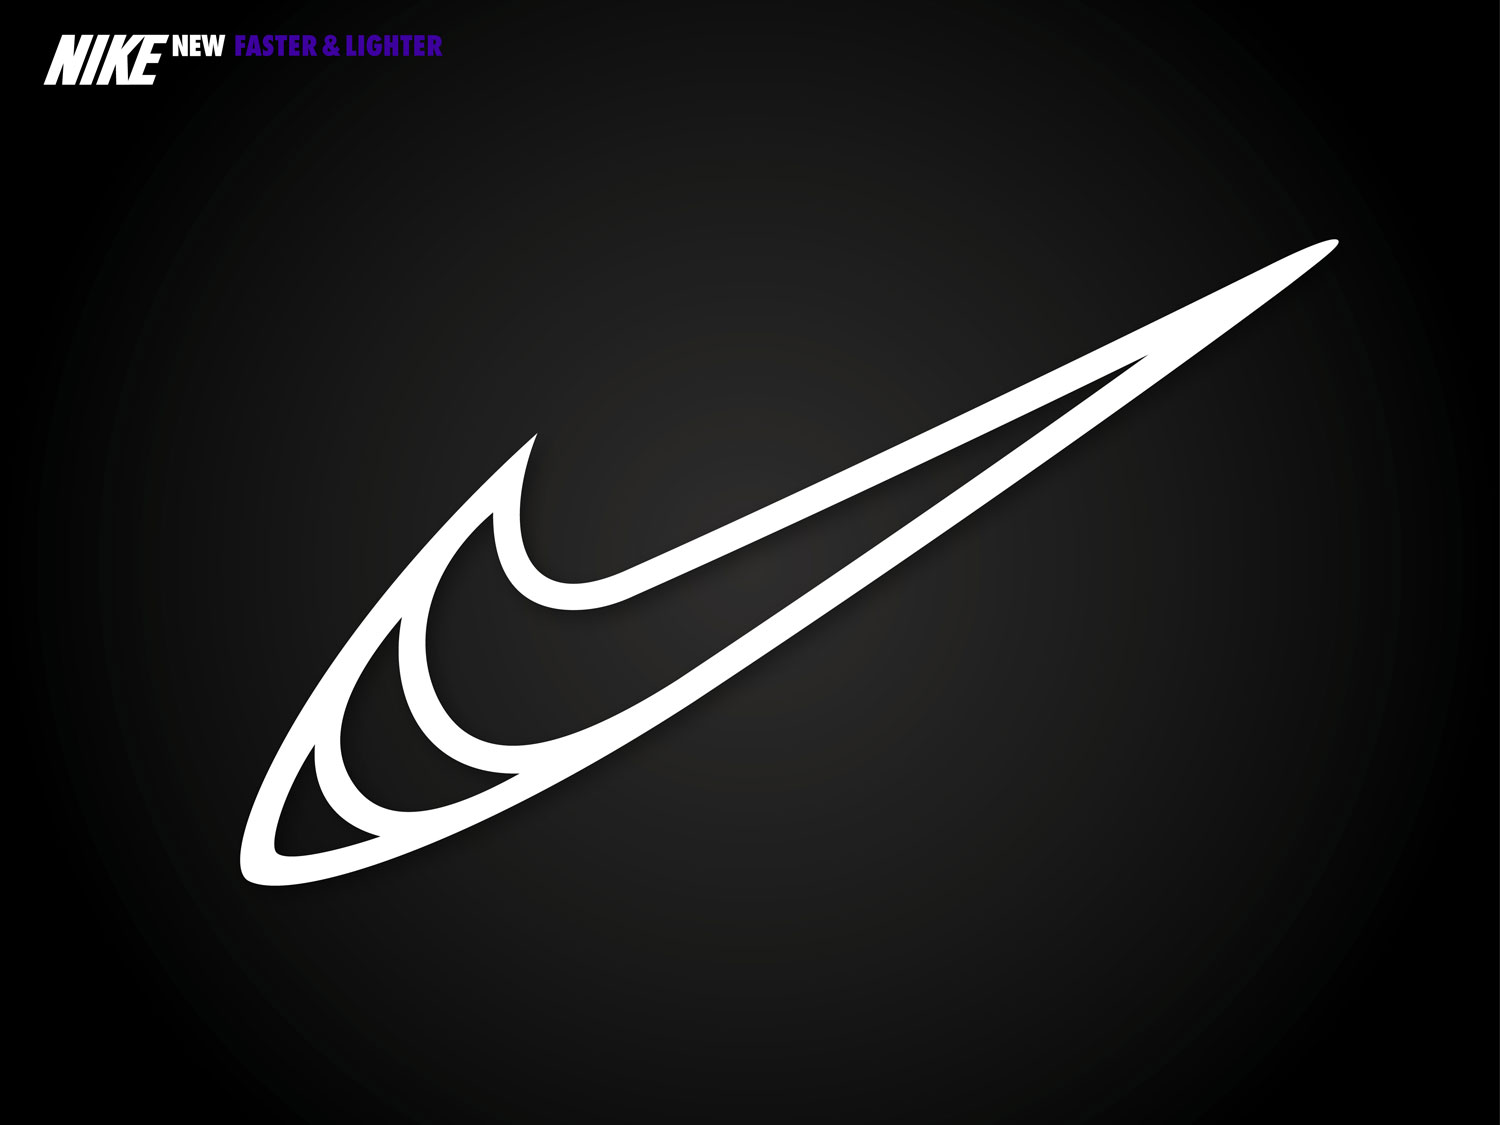 Nike logo redesign